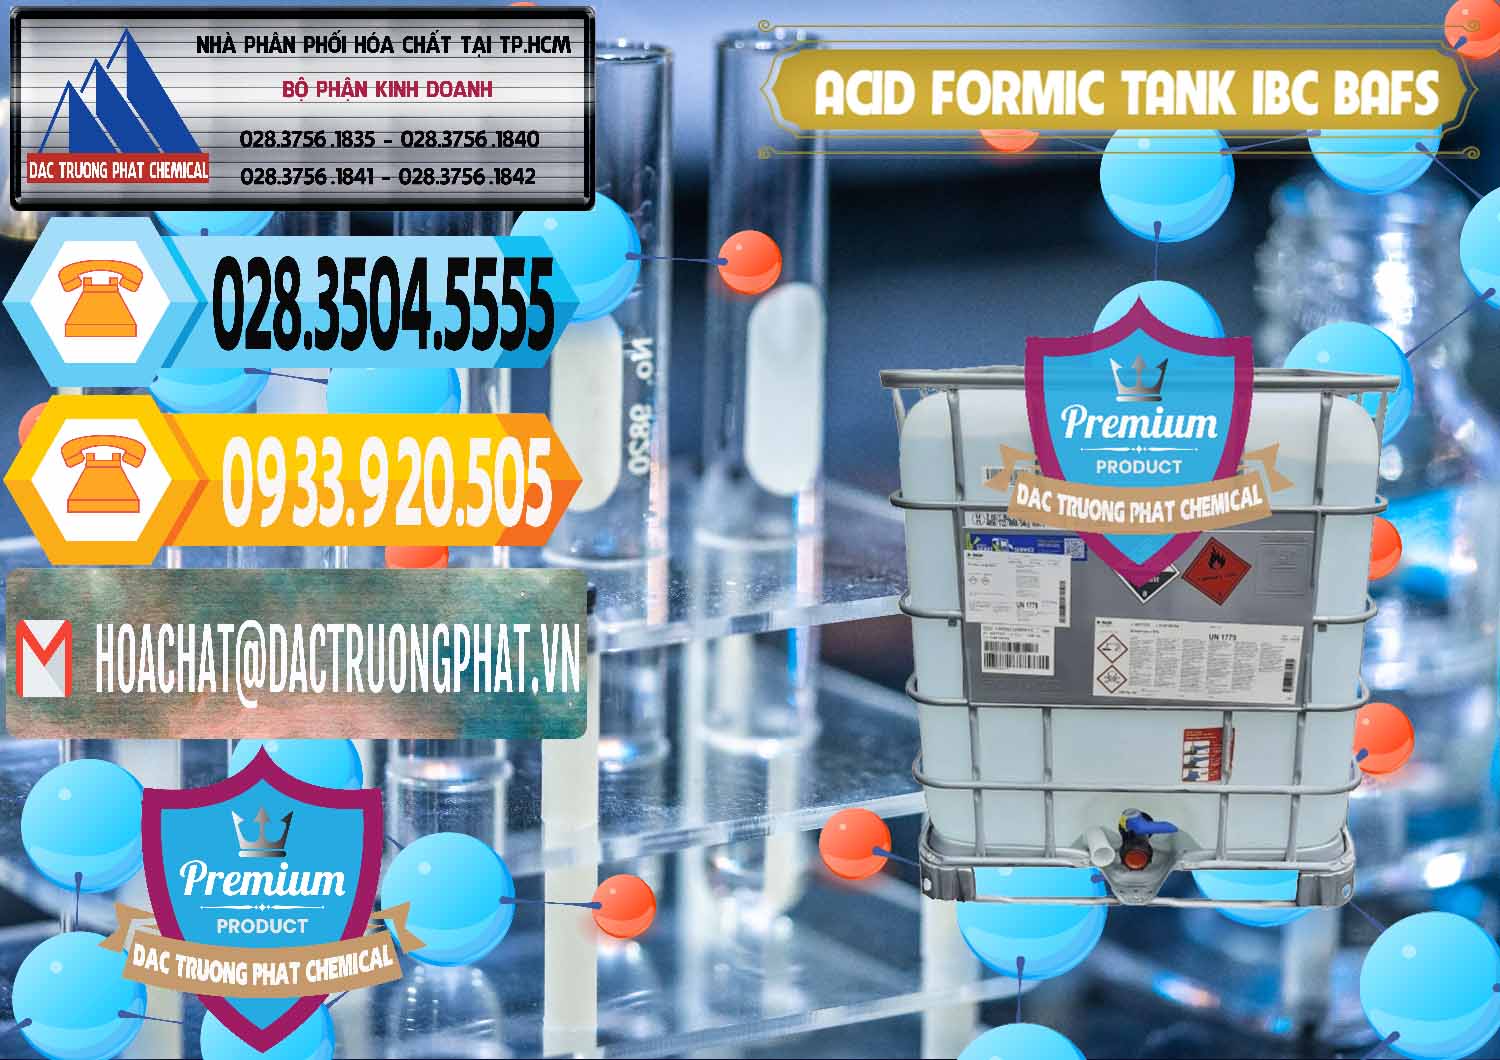 Đơn vị chuyên cung ứng và bán Acid Formic - Axit Formic Tank - Bồn IBC BASF Đức - 0366 - Kinh doanh & phân phối hóa chất tại TP.HCM - hoachattayrua.net